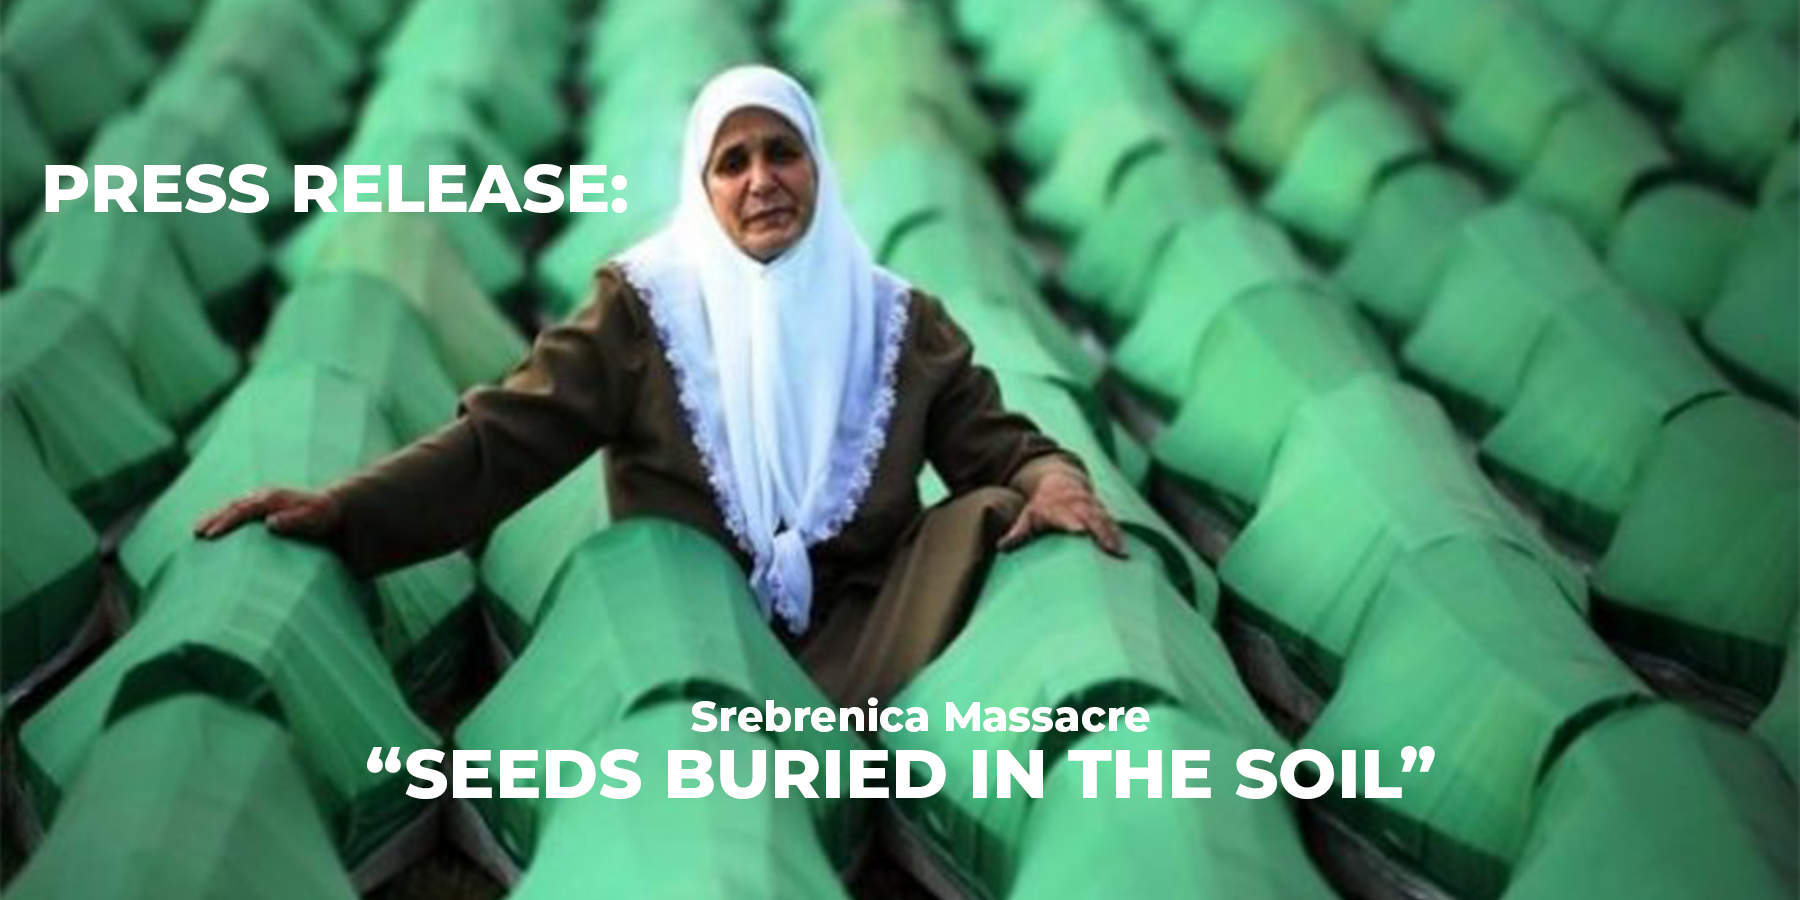 Press Release Regarding the Srebrenica Massacre